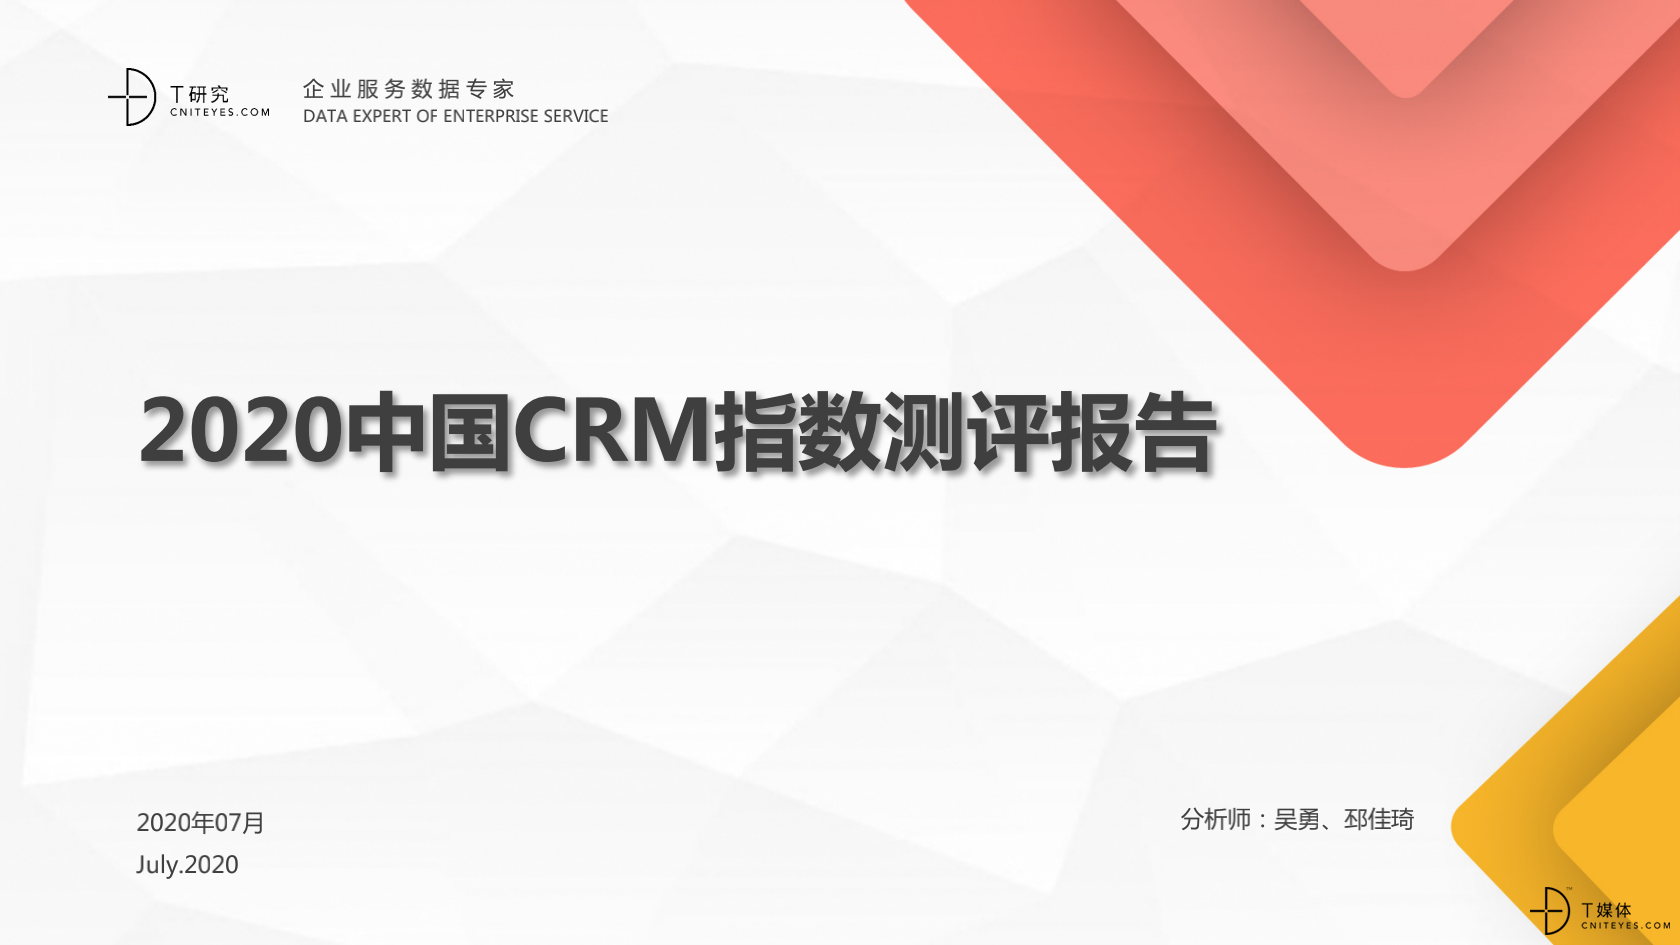 2_2020中国CRM指数测评报告v1.5_00.png